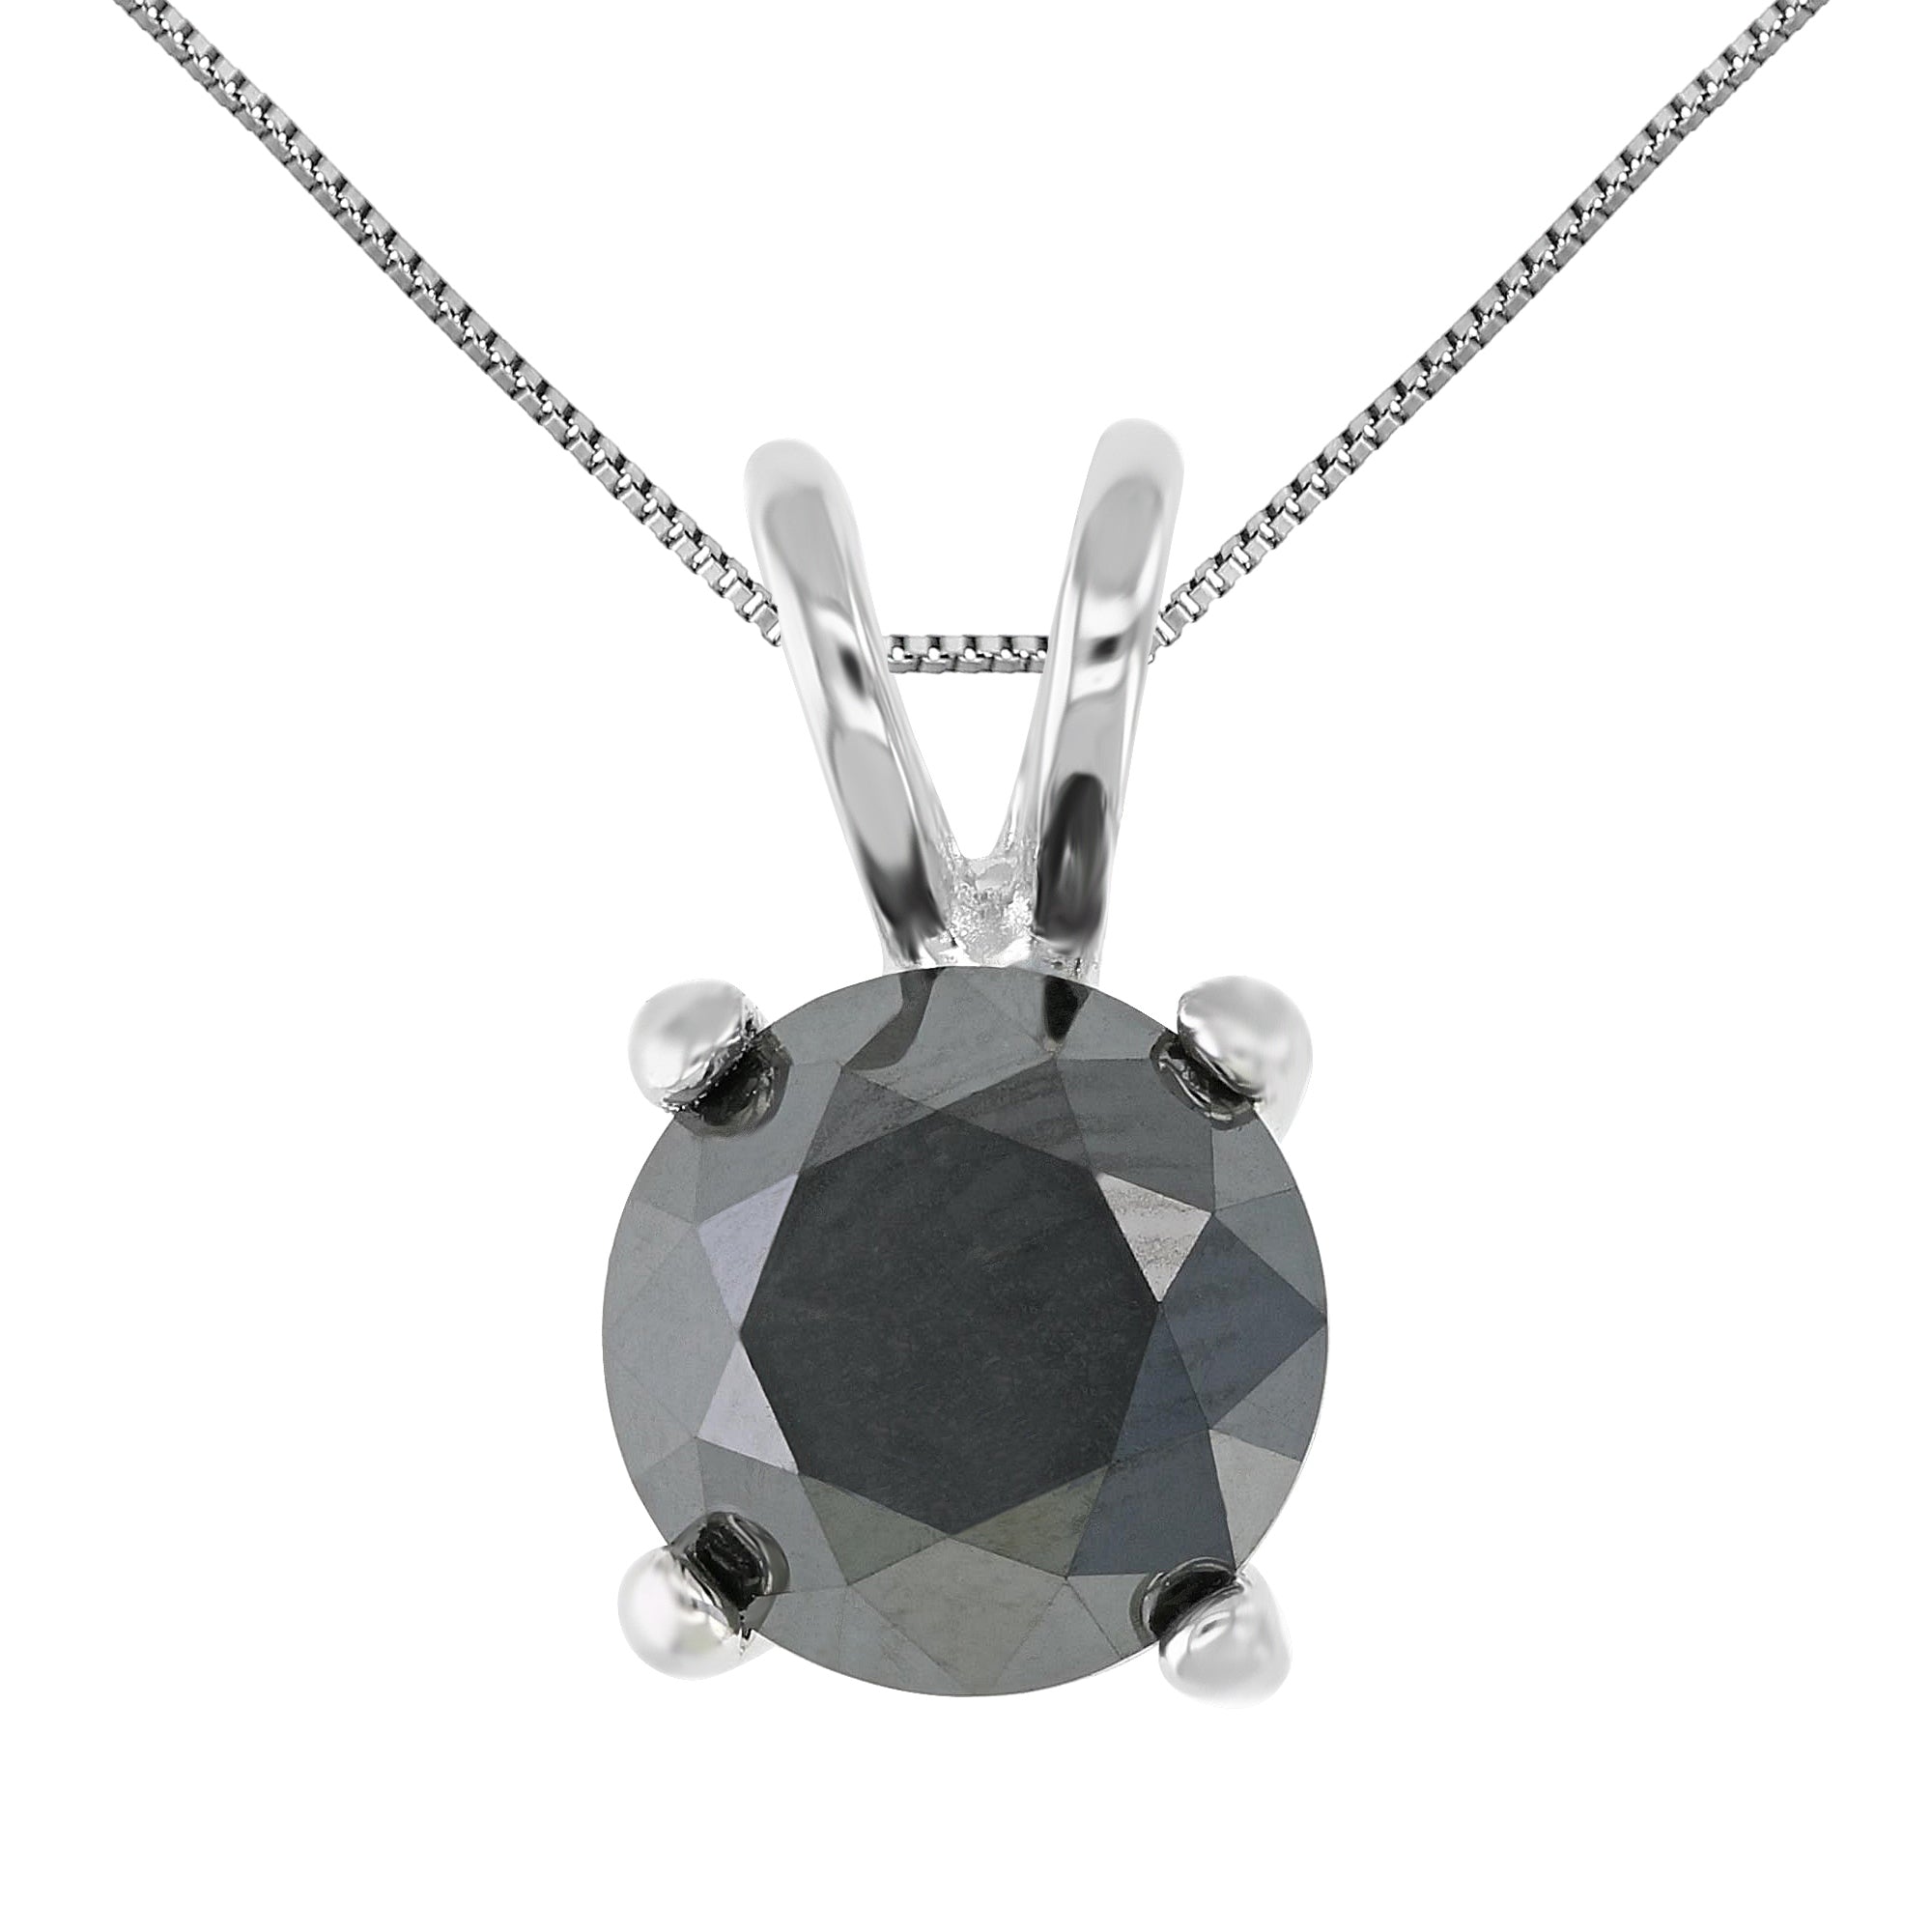 Black Solitaire Diamond Pendant Necklace